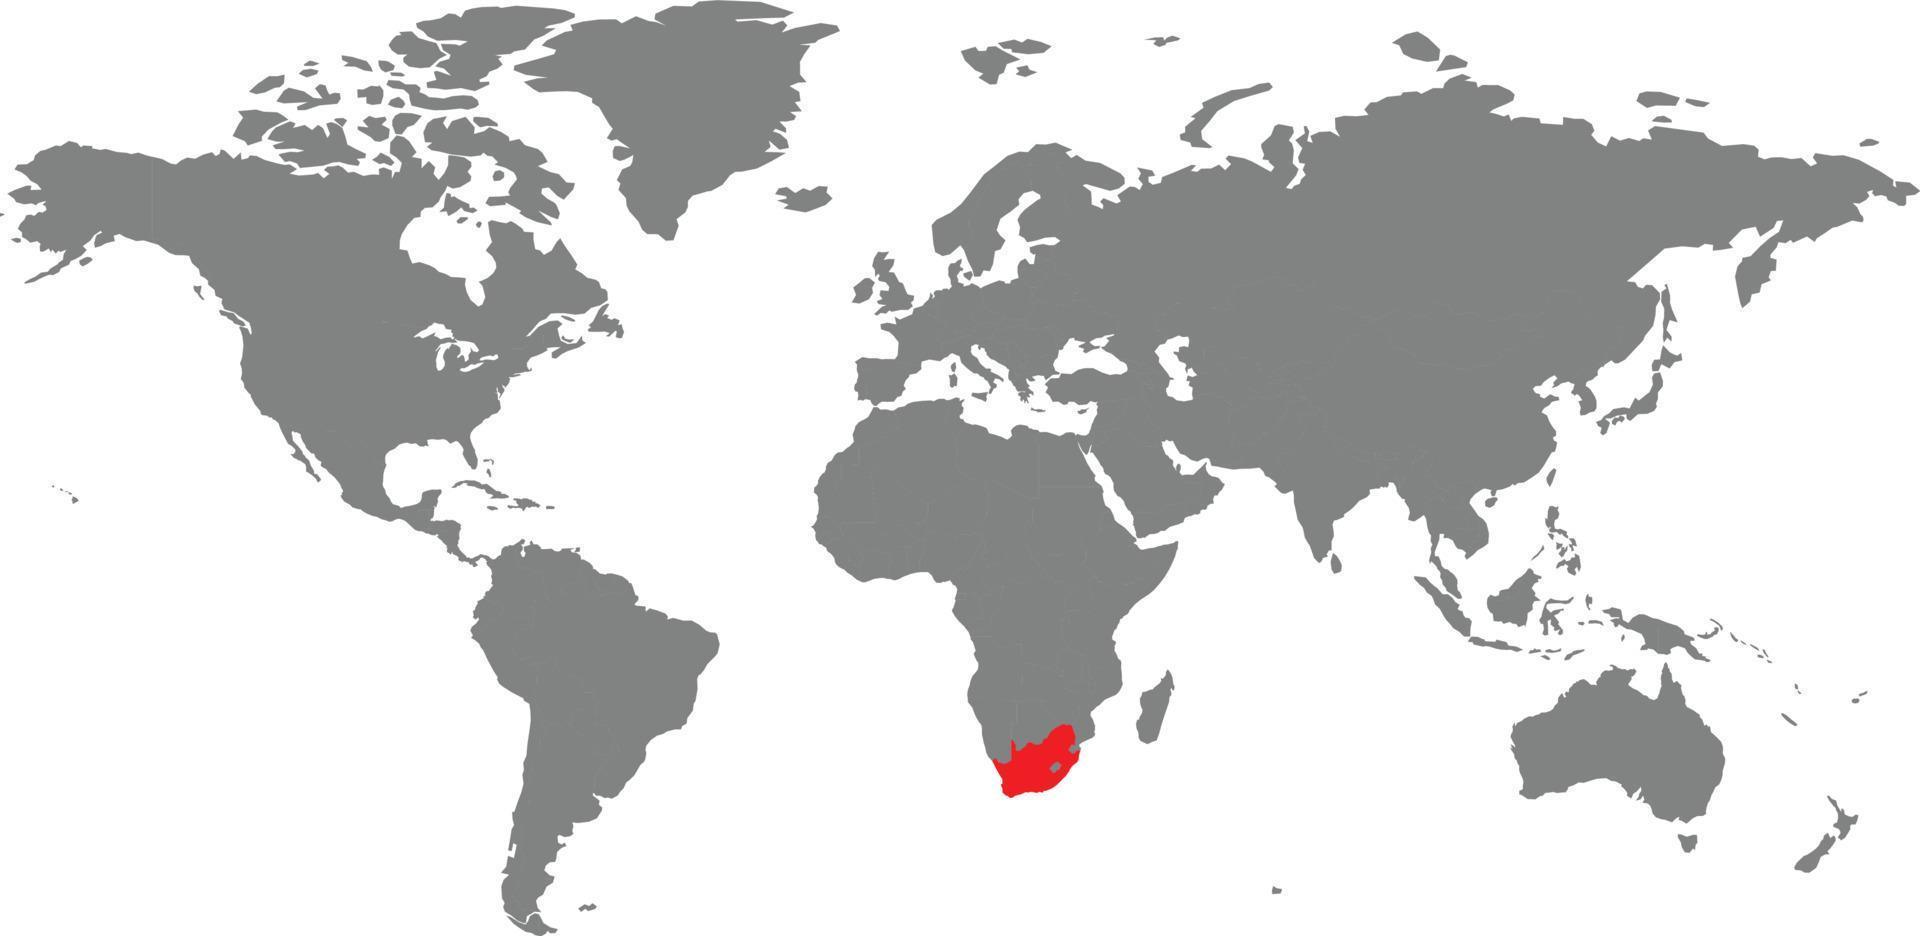 mapa da áfrica do sul no mapa do mundo vetor